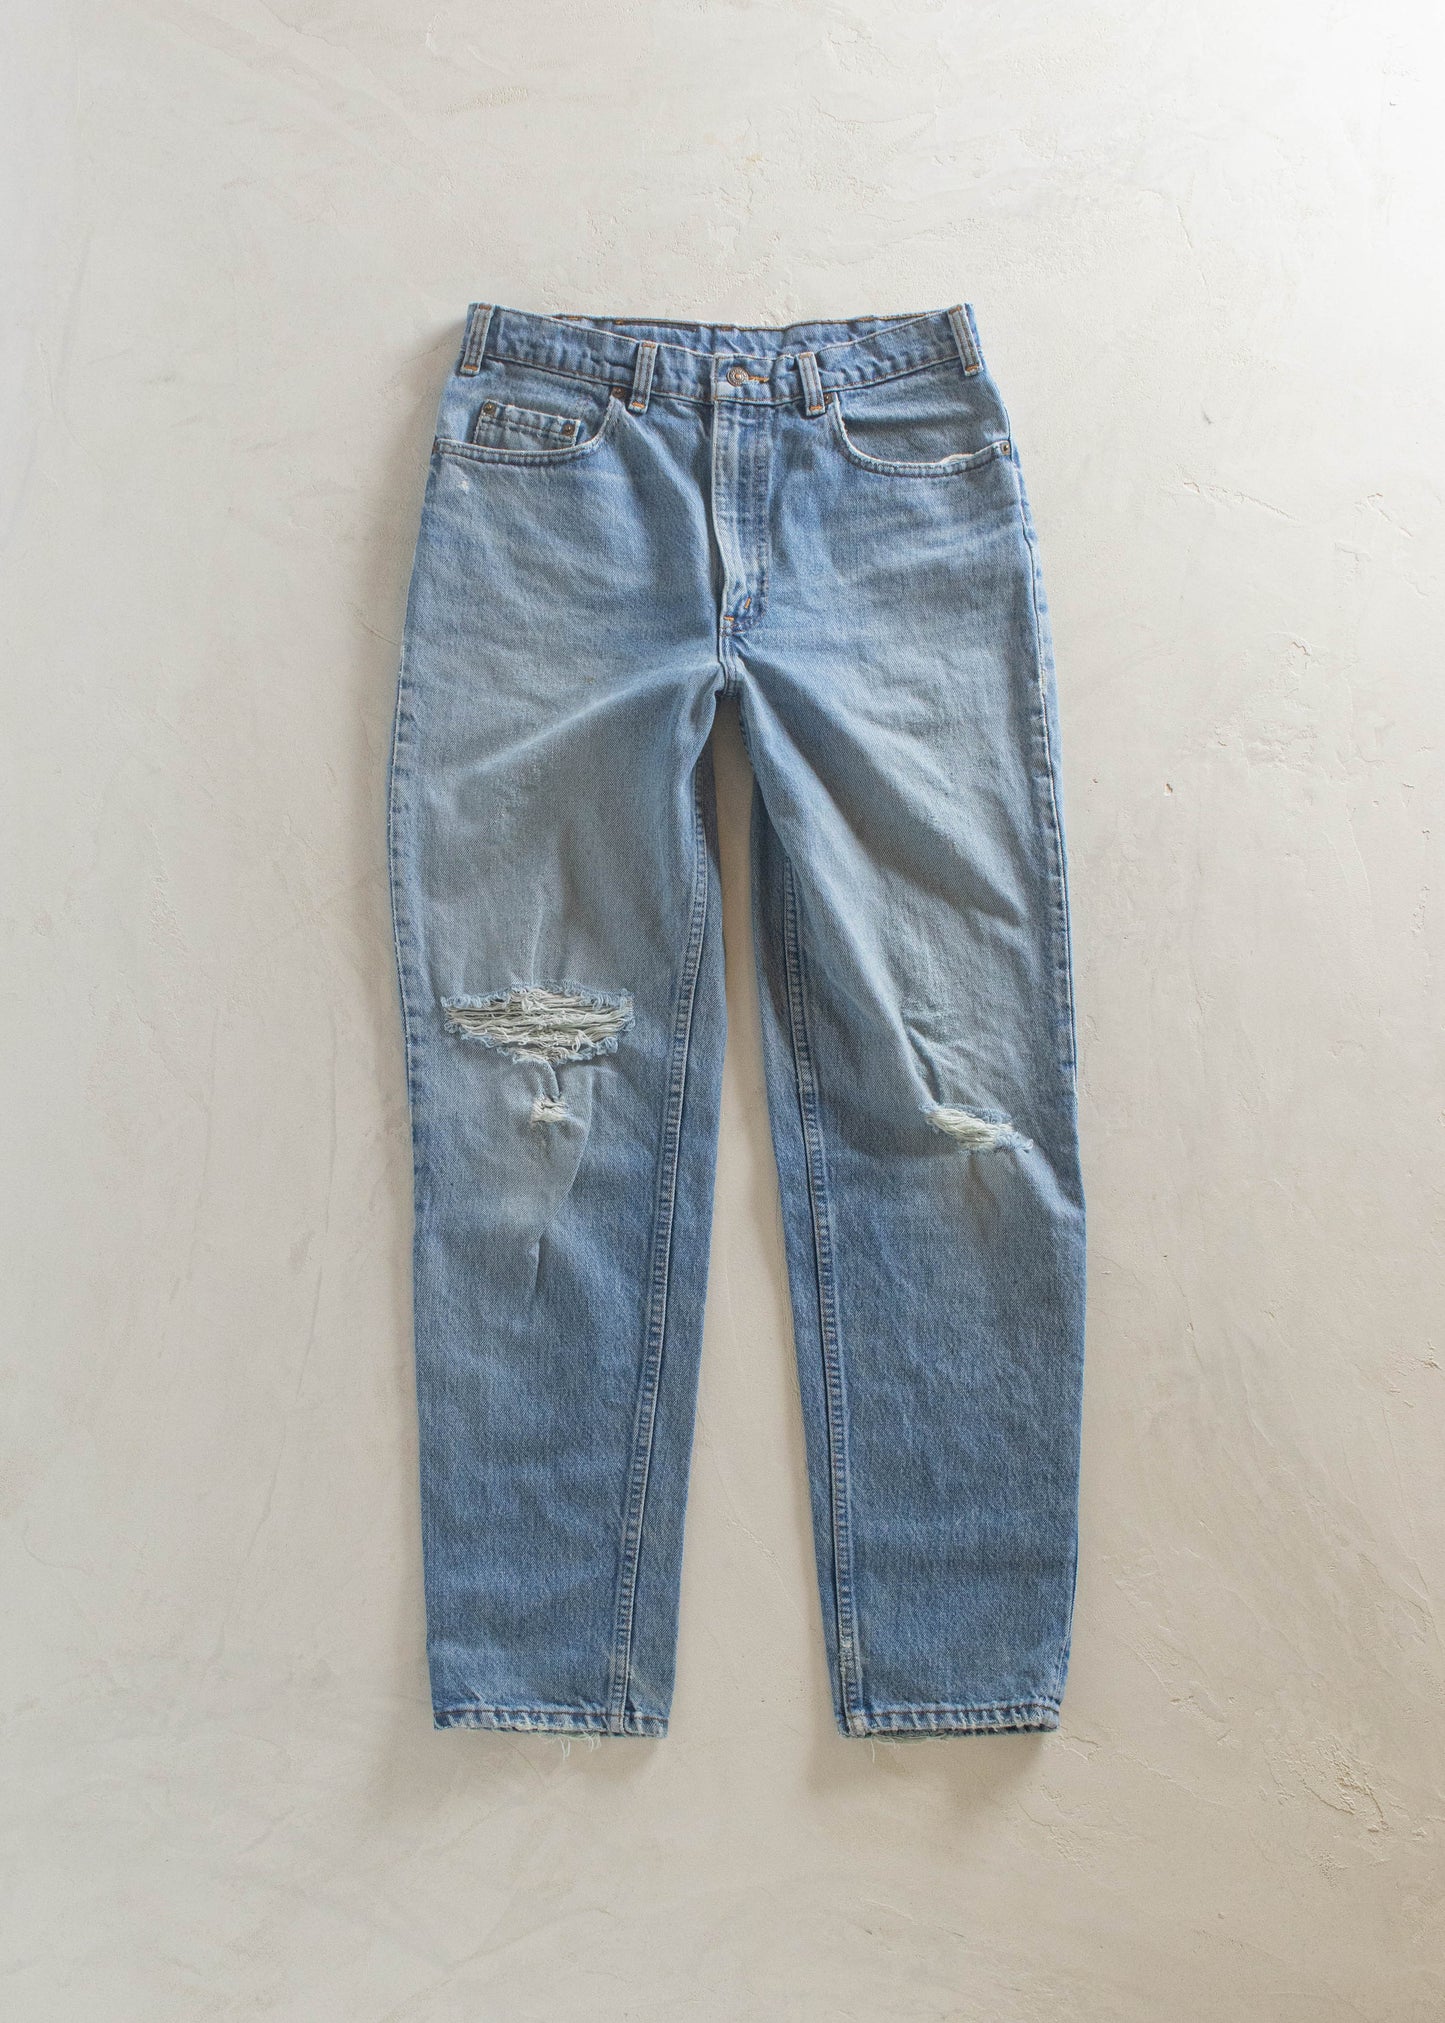 1980s Levi's 532 Lightwash Jeans Size Women's 30 Men's 32